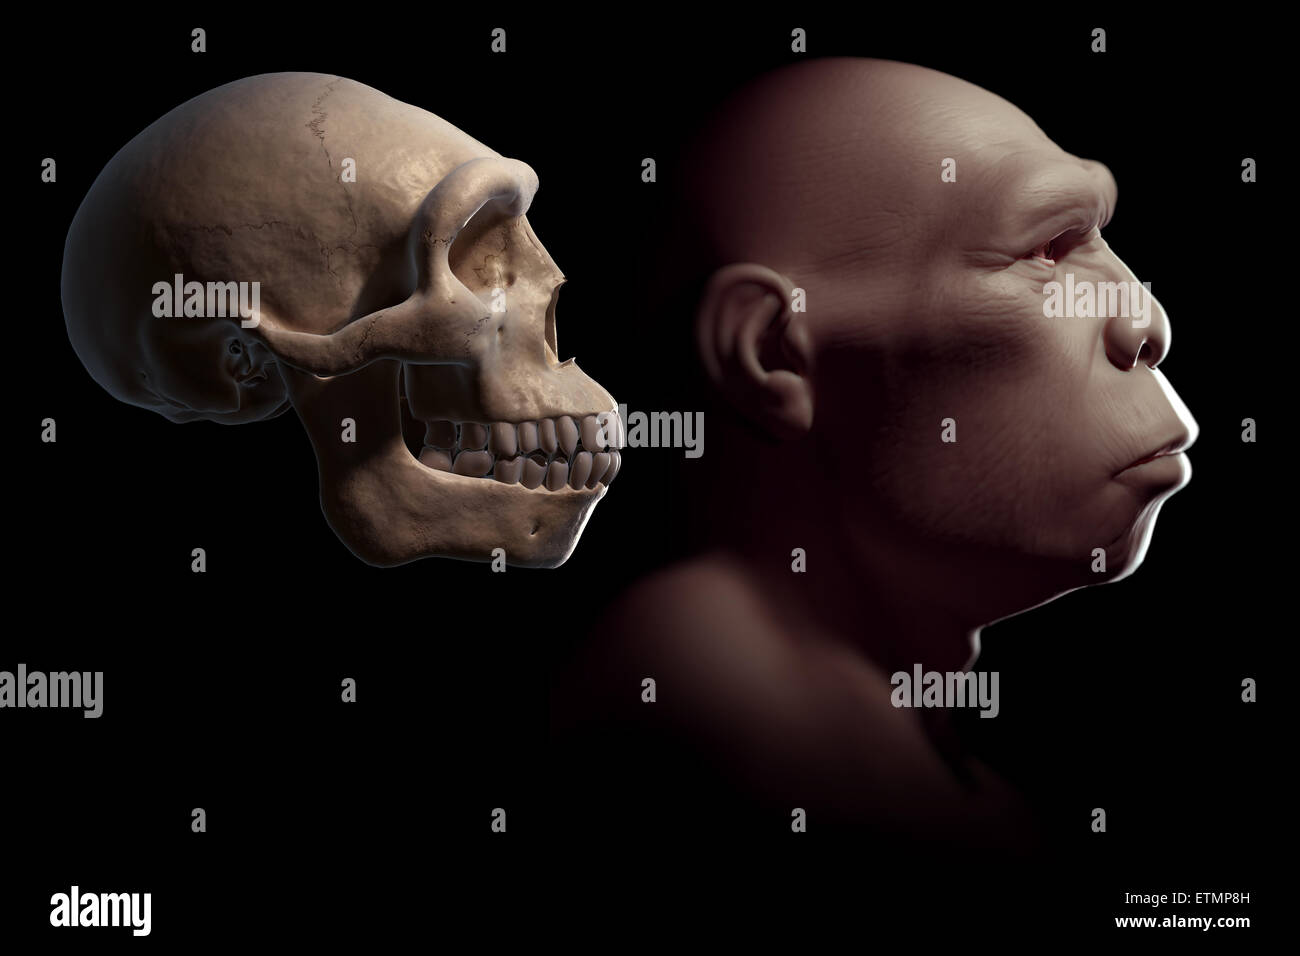 Representación de un Homo erectus junto a el cráneo de un Homo erectus de comparación. El Homo Erectus es un género extinto de homínidos y ancestro de Homo Sapiens. Foto de stock